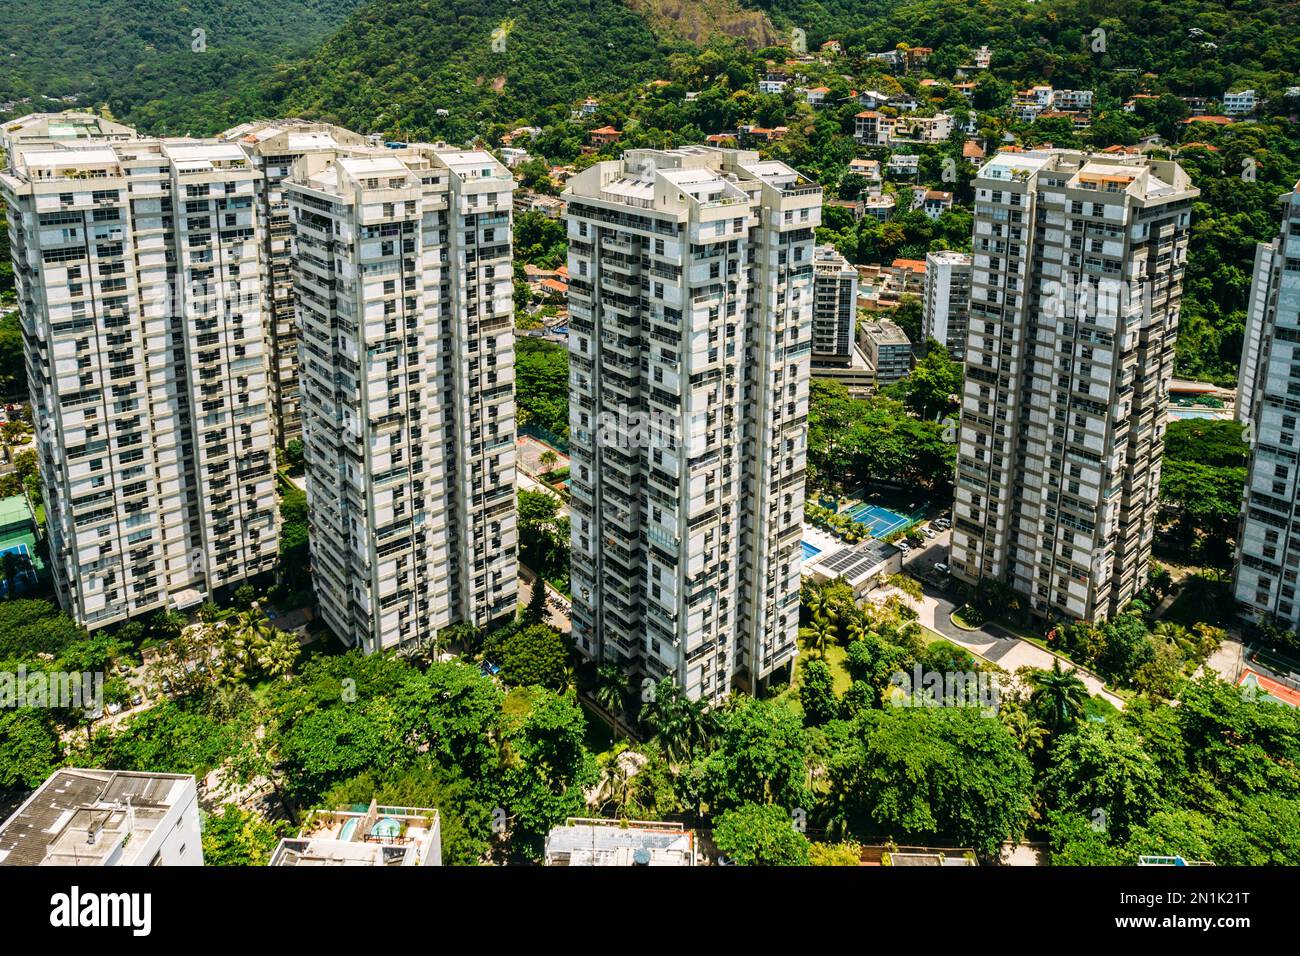 Vue aérienne sur les immeubles résidentiels luxueux de Sao Conrado, Rio de Janeiro, Brésil Banque D'Images